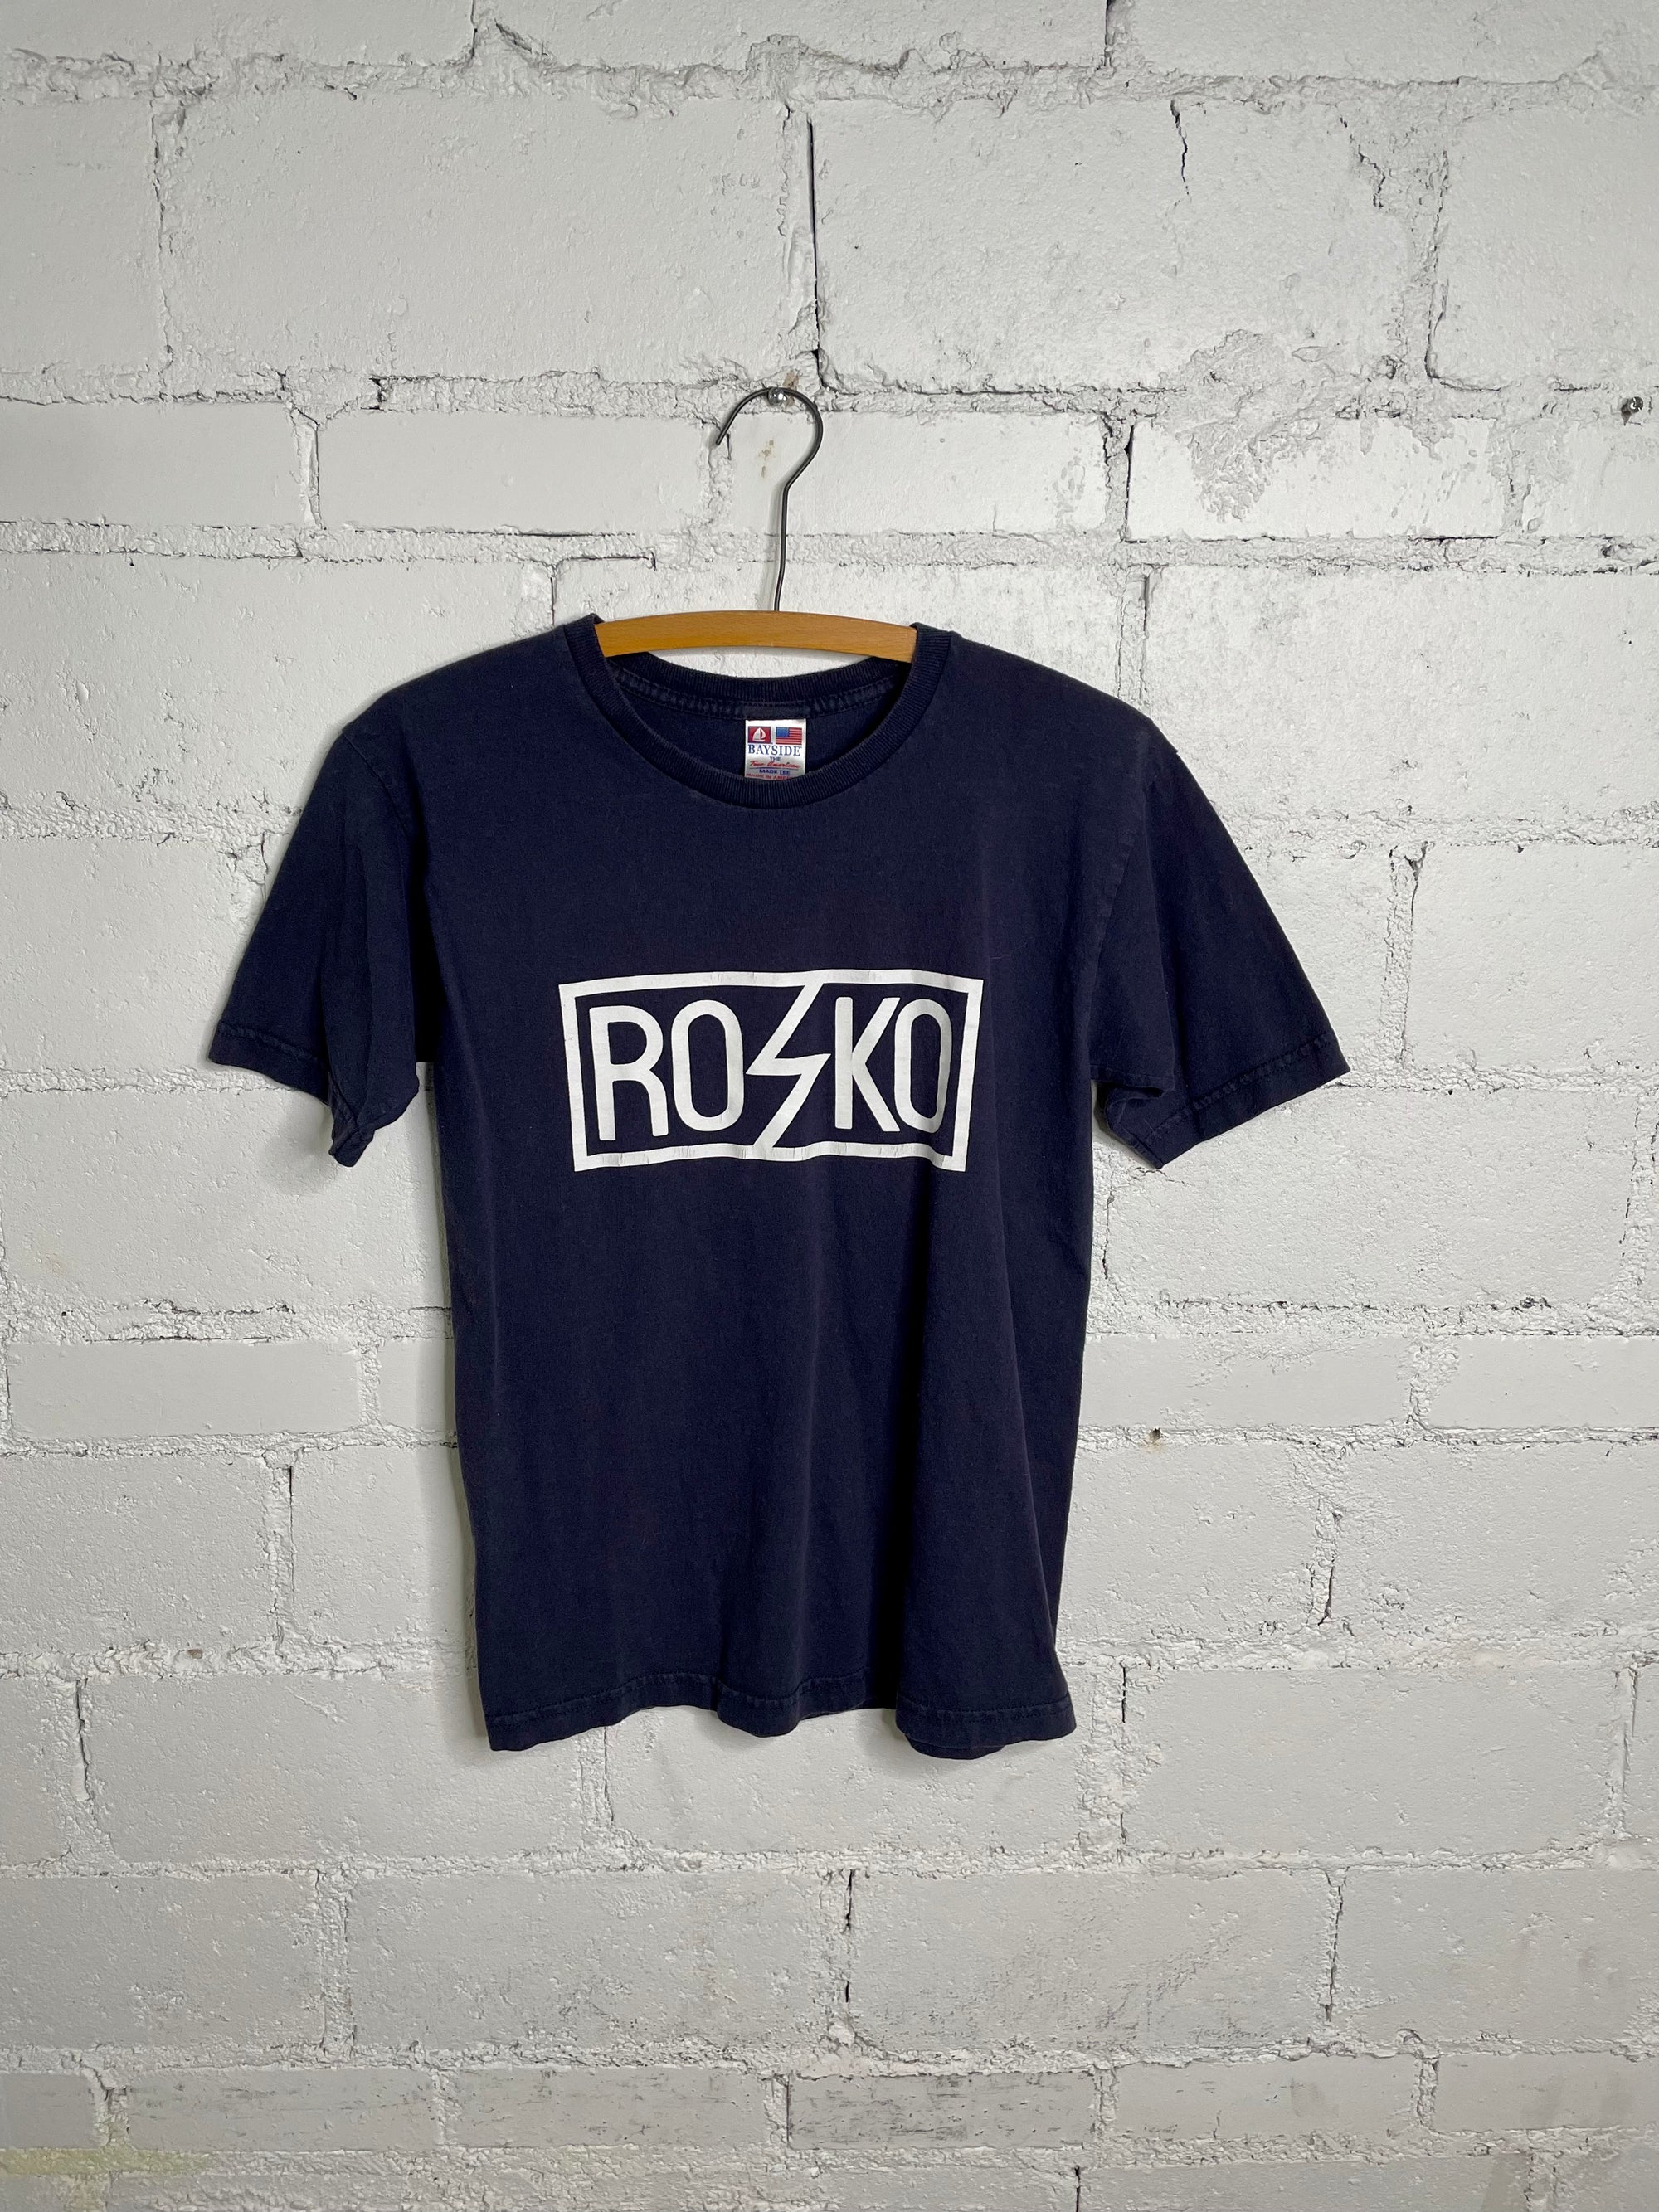 "Rosko" Racing Graphic Tee